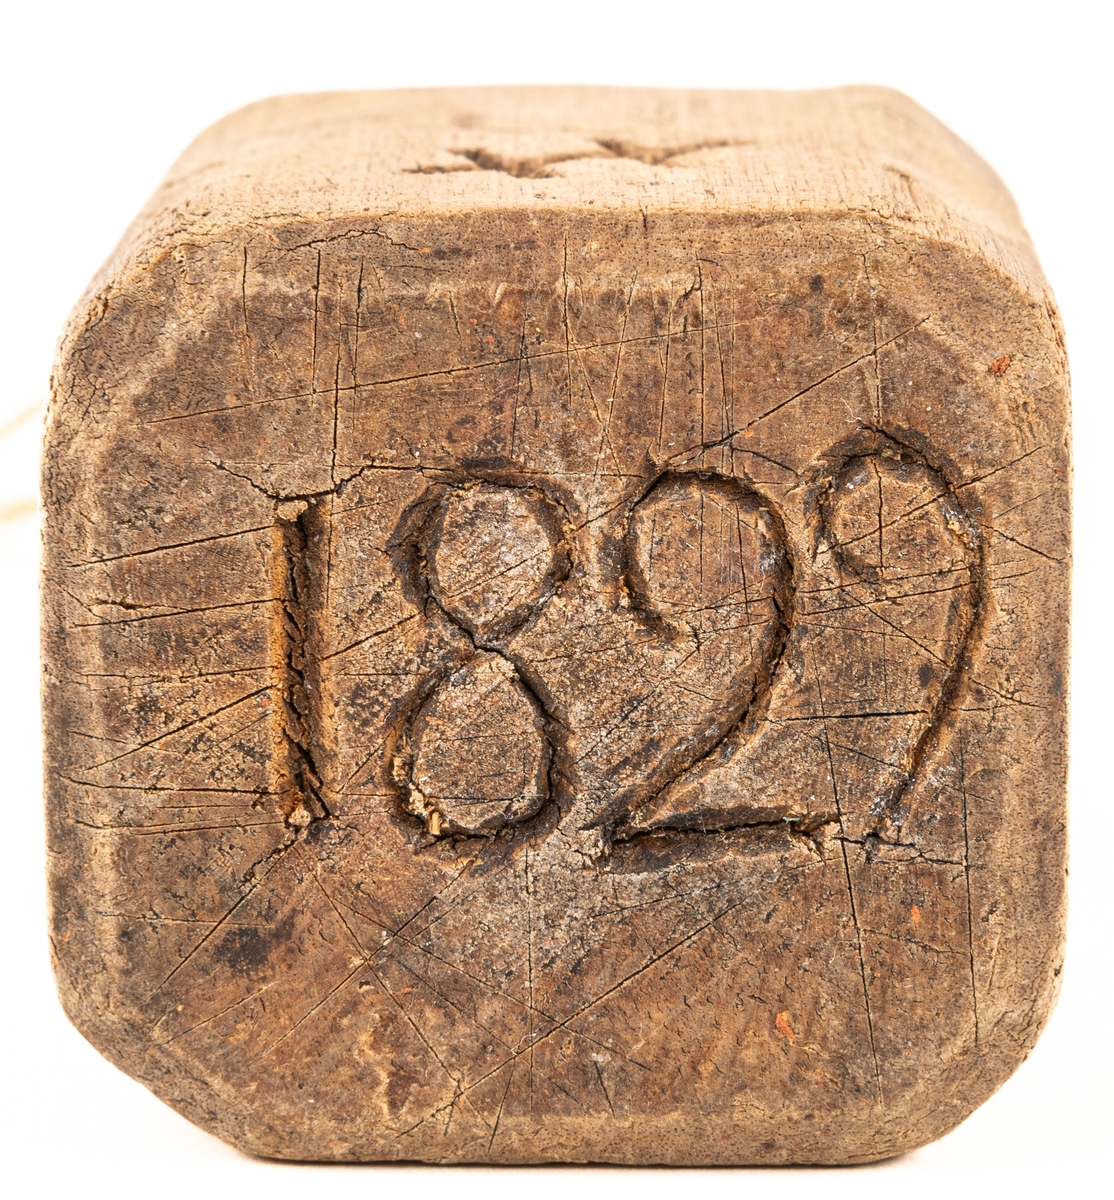 Plogklubba av trä, fyrsidig med handtag och inristade bomärken. Daterad 1829.